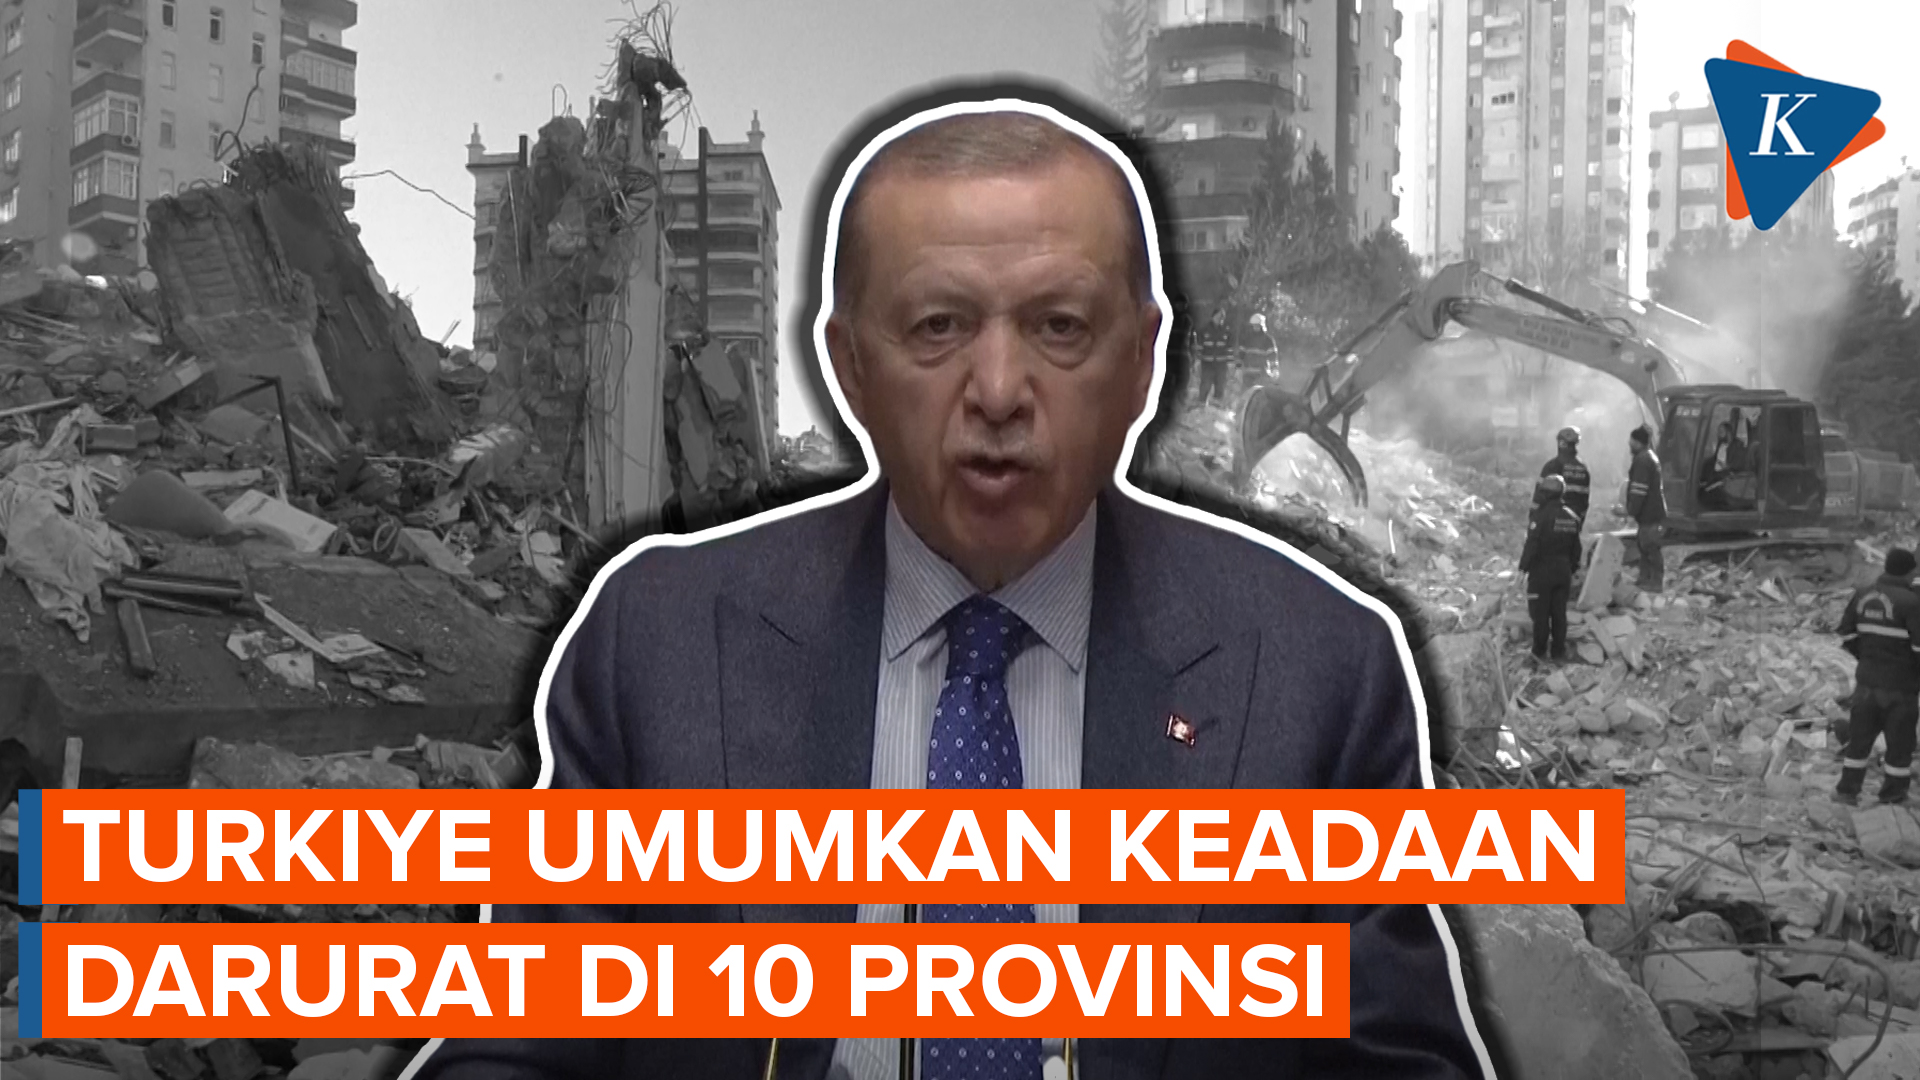 Erdogan Umumkan Keadaan Darurat Selama 3 Bulan untuk 10 Provinsi Turkiye